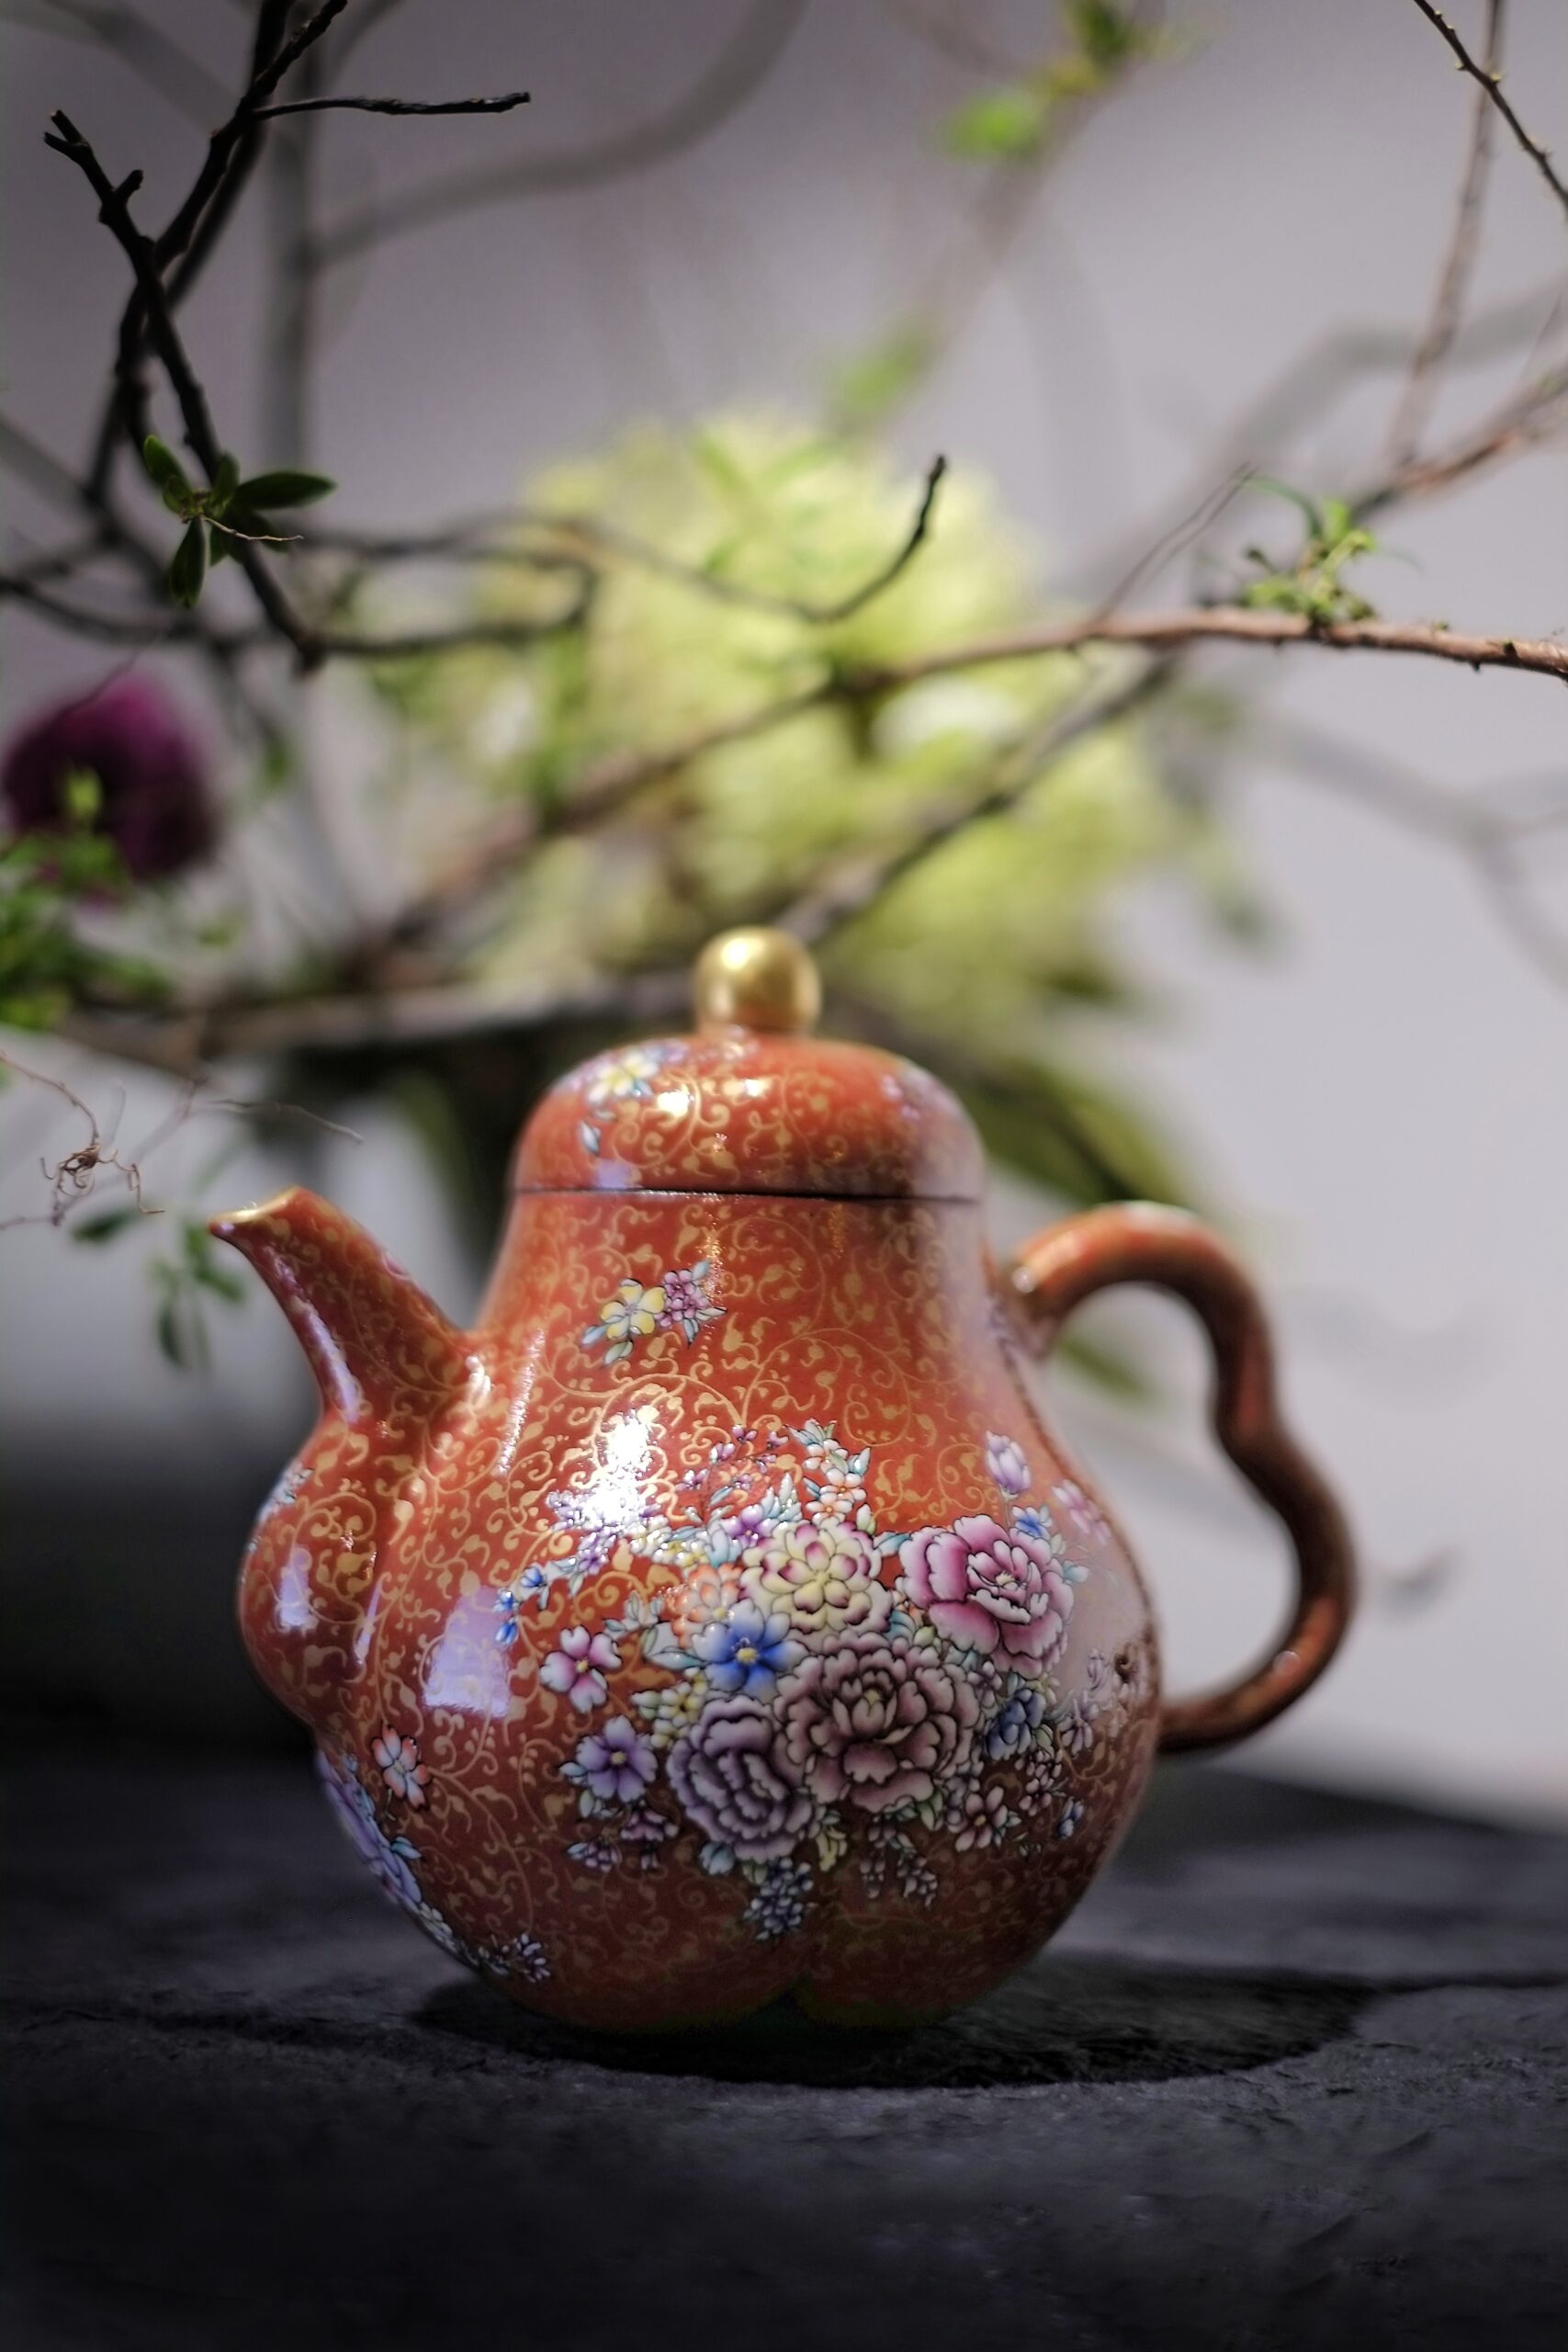 1月 新展預告 春華姿韻 林靖崧的紫砂藝術創作展